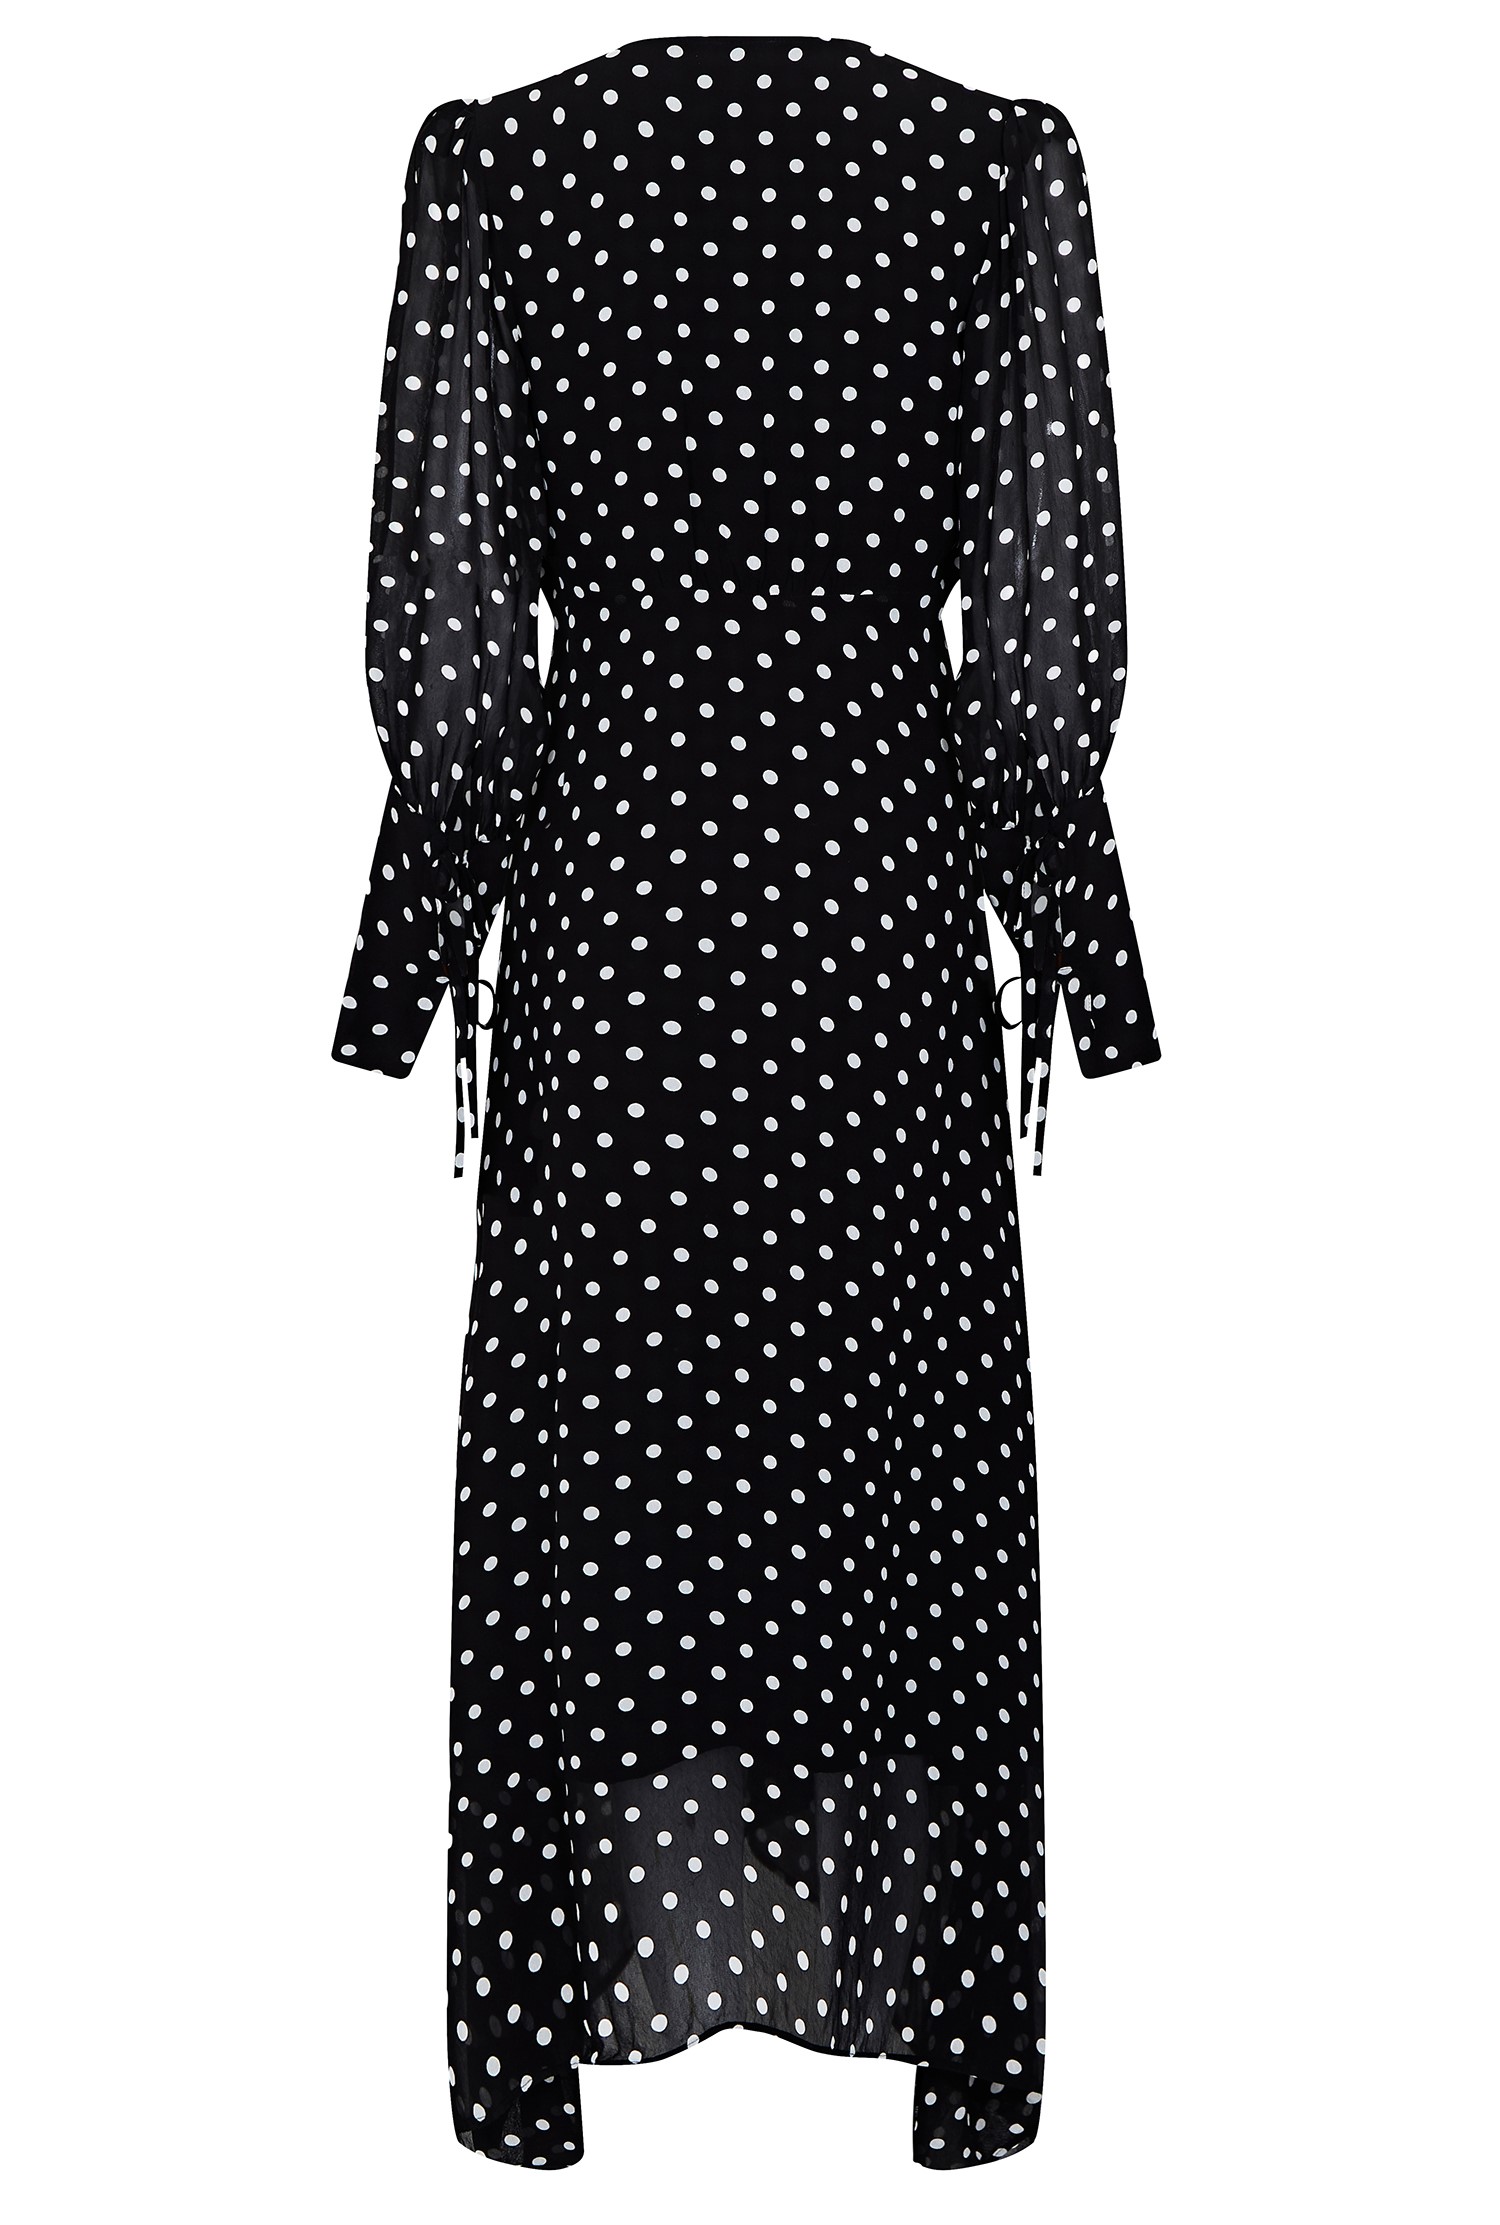 Georgette Midi Dress with Long Sleeves in Black Print | Ghost London